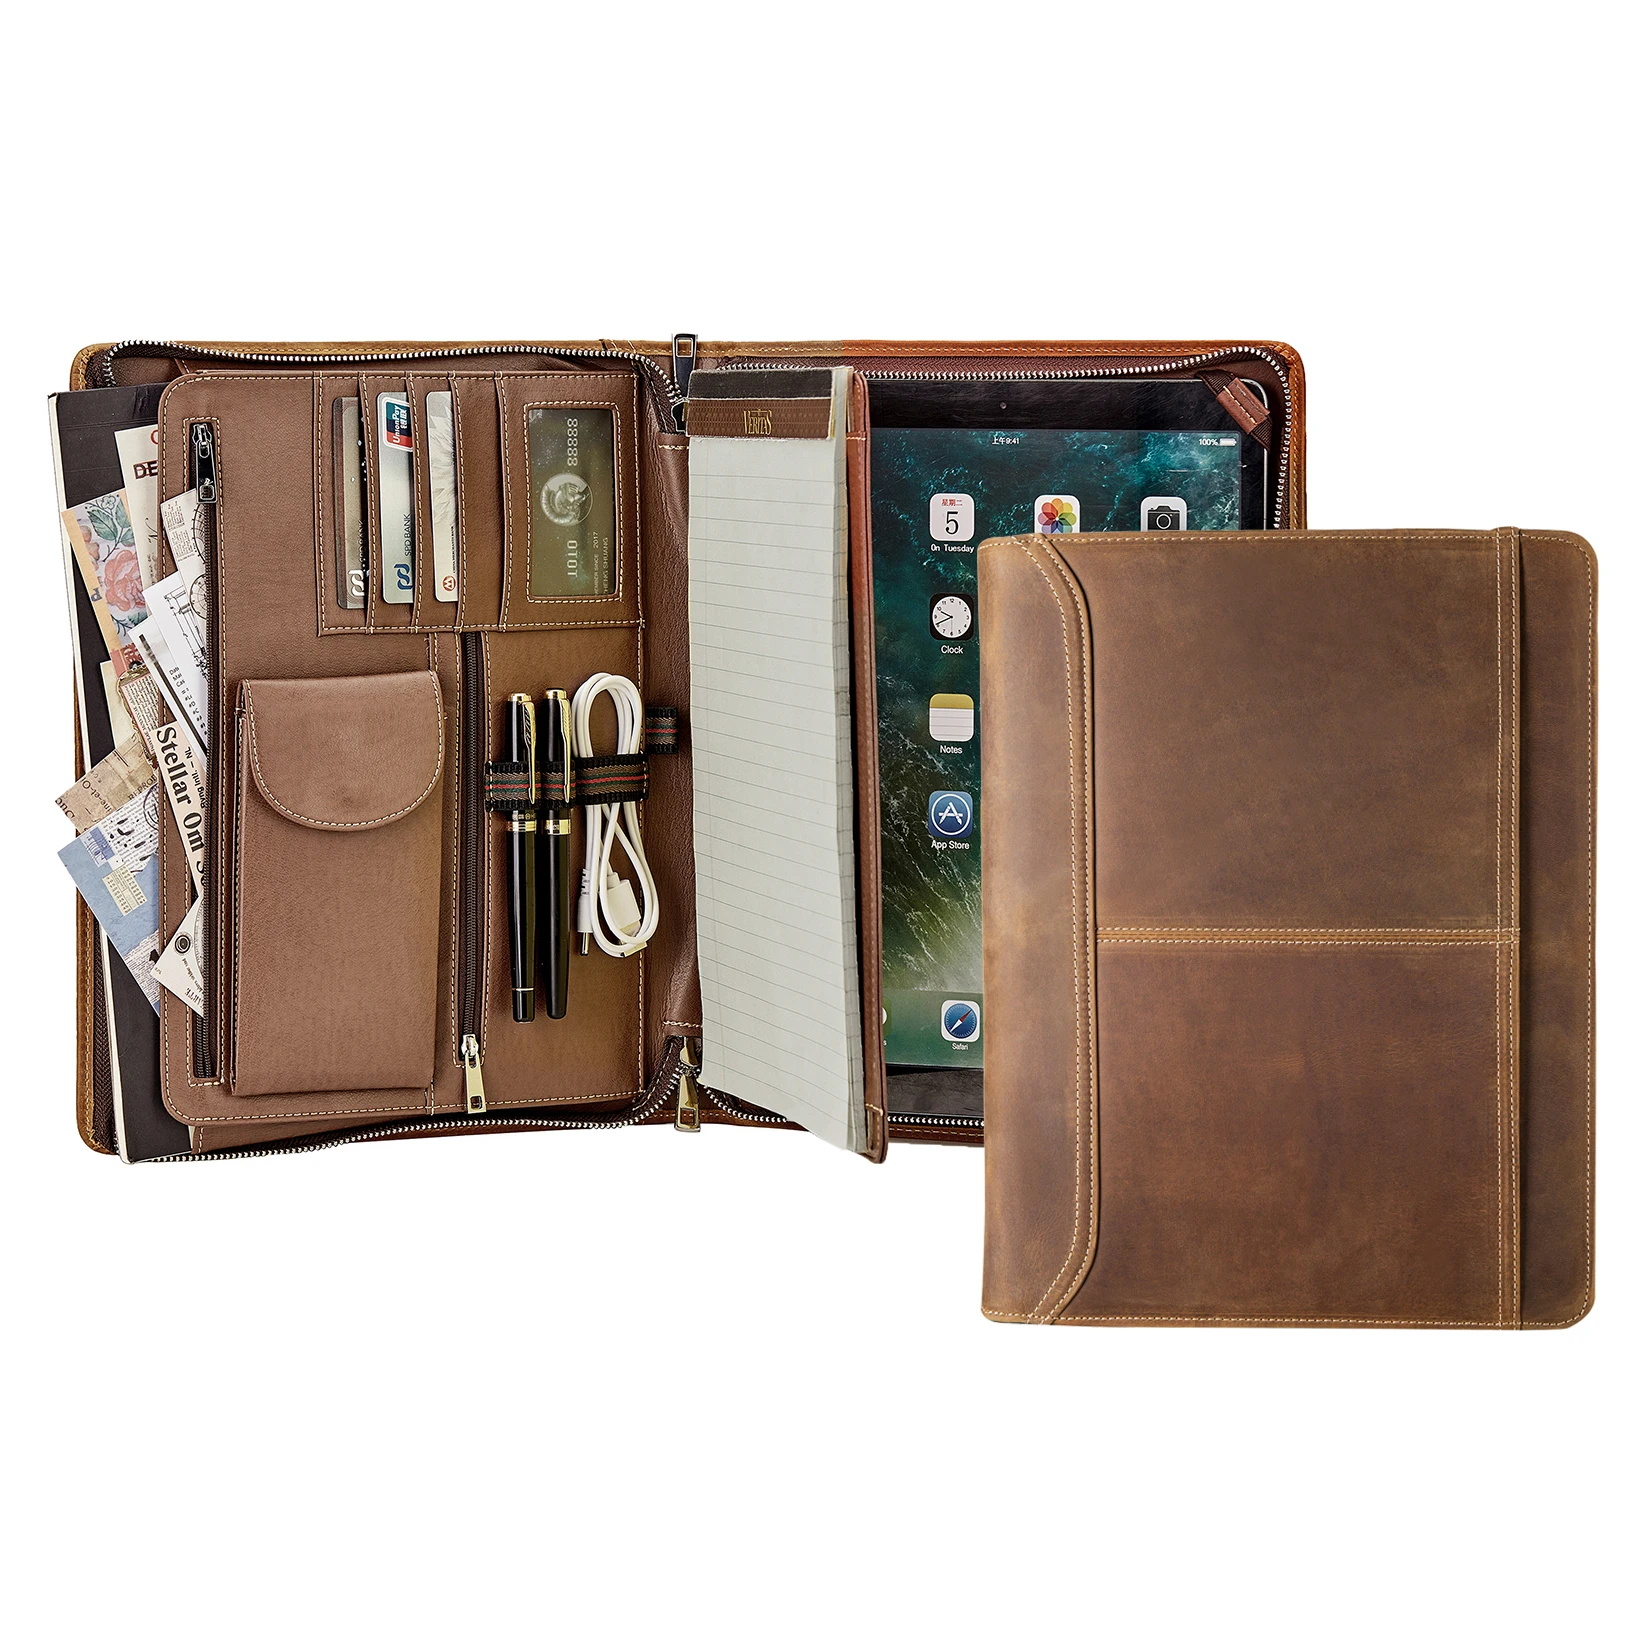 

Handmade Retro Crazy-Horse Leather Portfolio A4 Folder, Professional Business Padfolio Portfolio Case Document Organizer